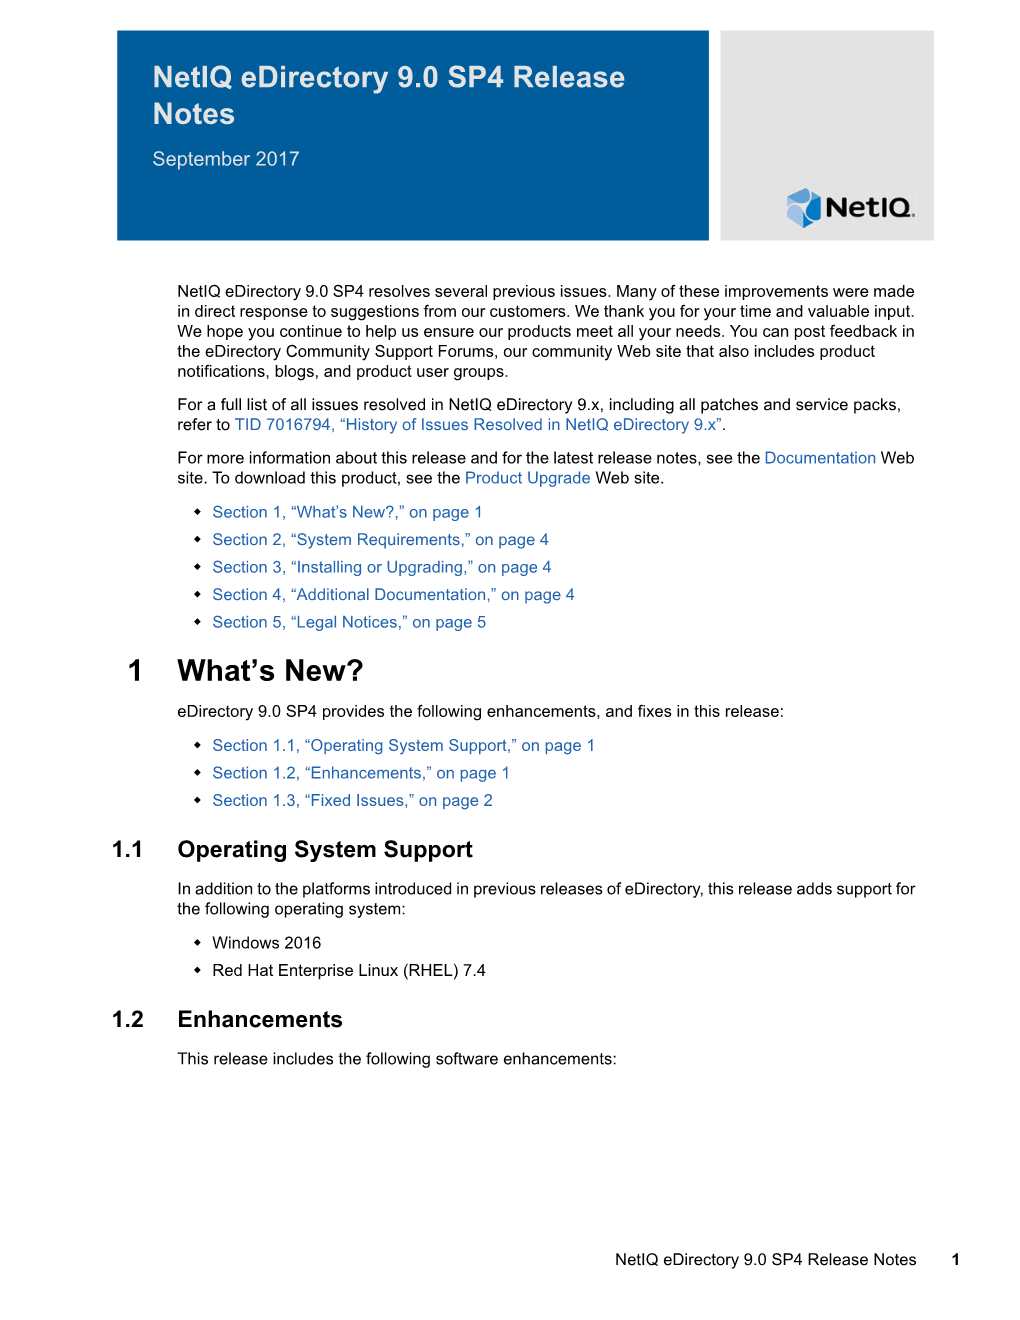 Netiq Edirectory 9.0 SP4 Release Notes September 2017